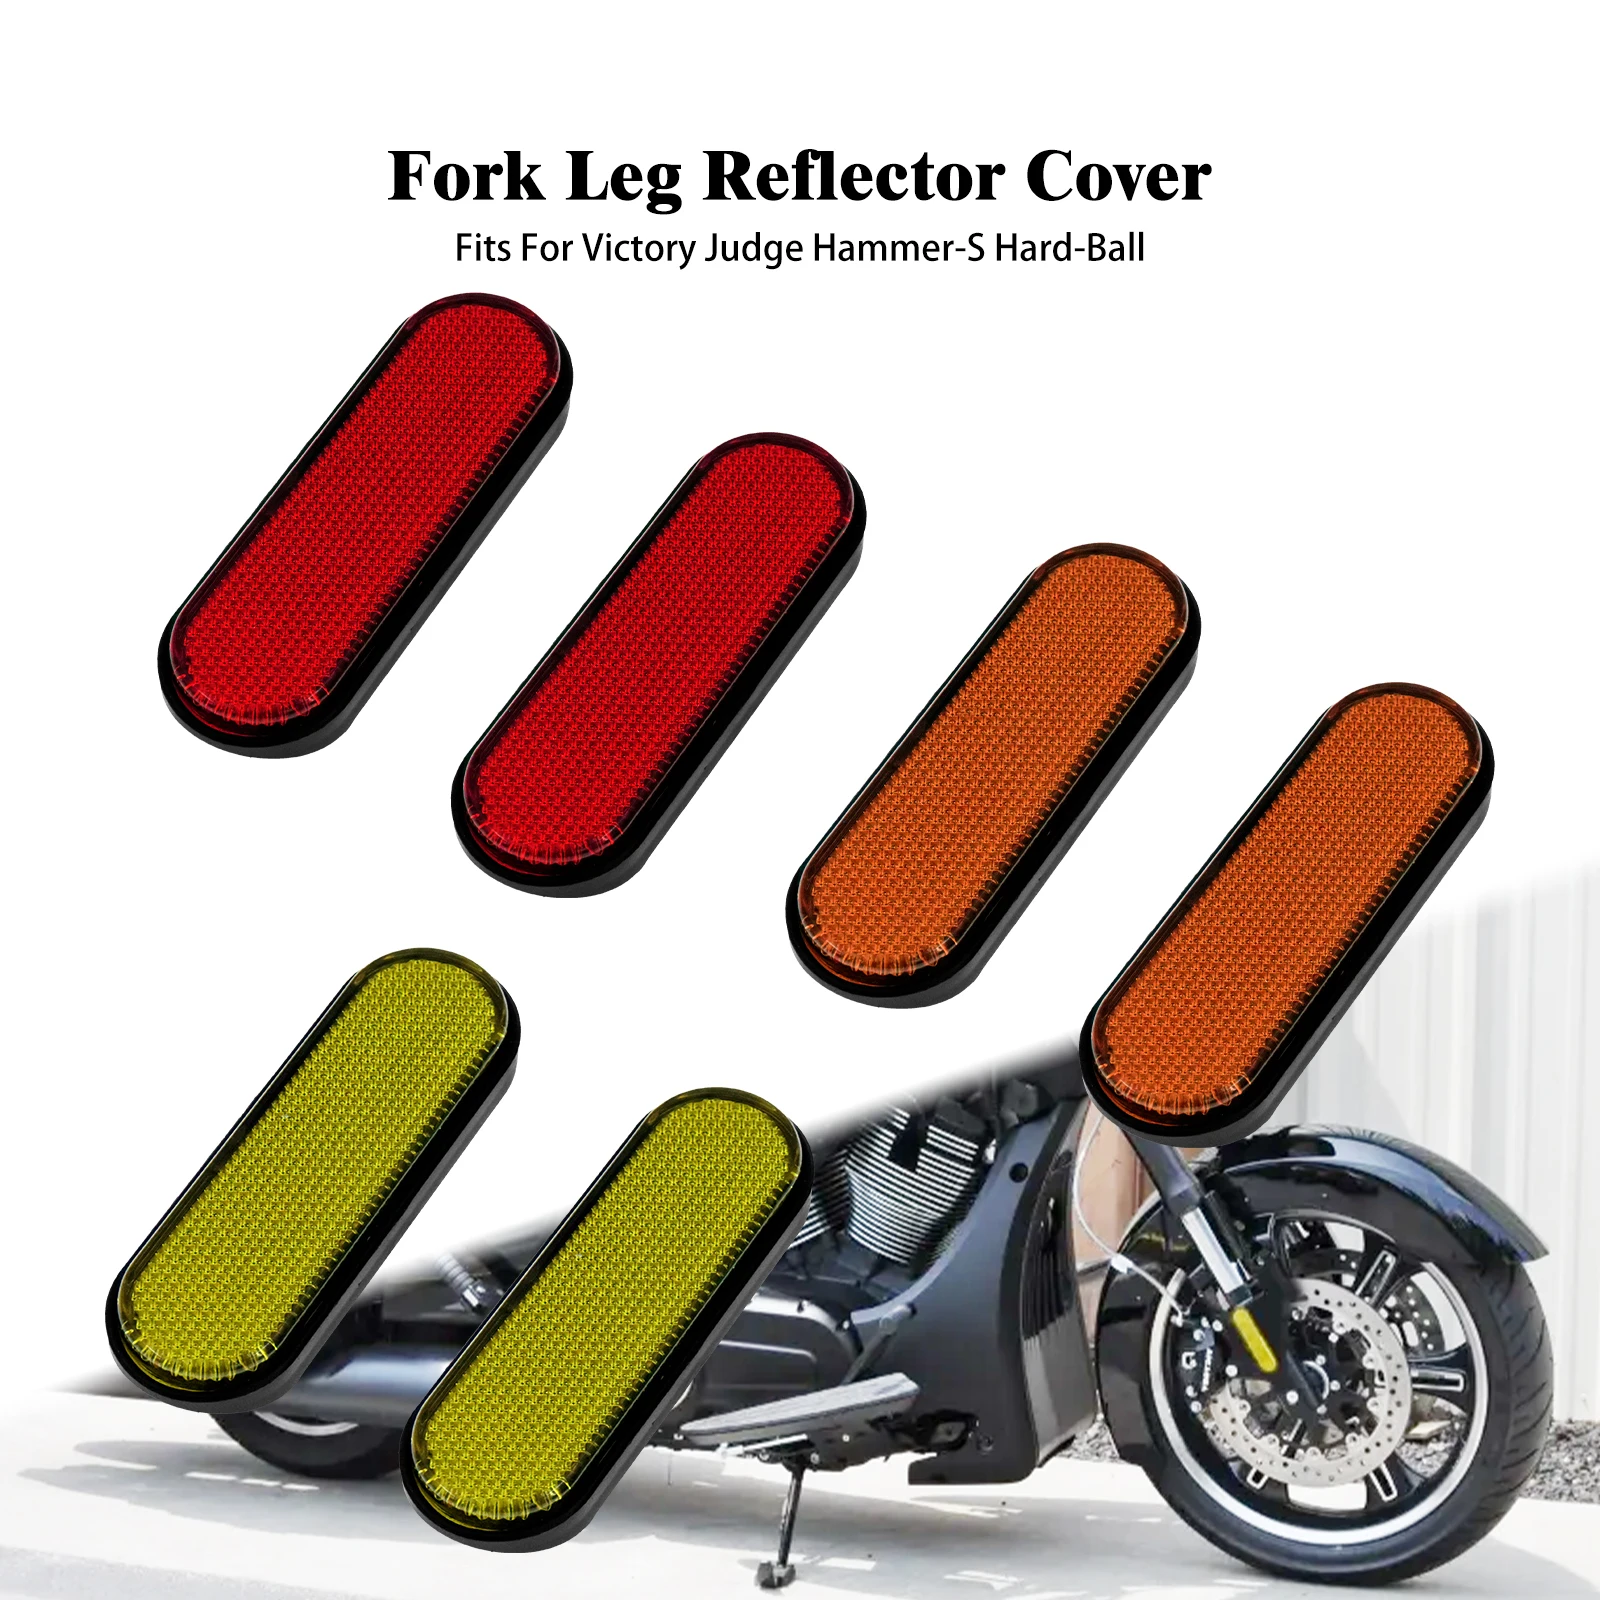 

Наклейка на переднюю часть мотоцикла, Нижние ножки, слайдер, красный/оранжевый/желтый, предупреждение о безопасности победе, судьи молот-с, жесткий шар